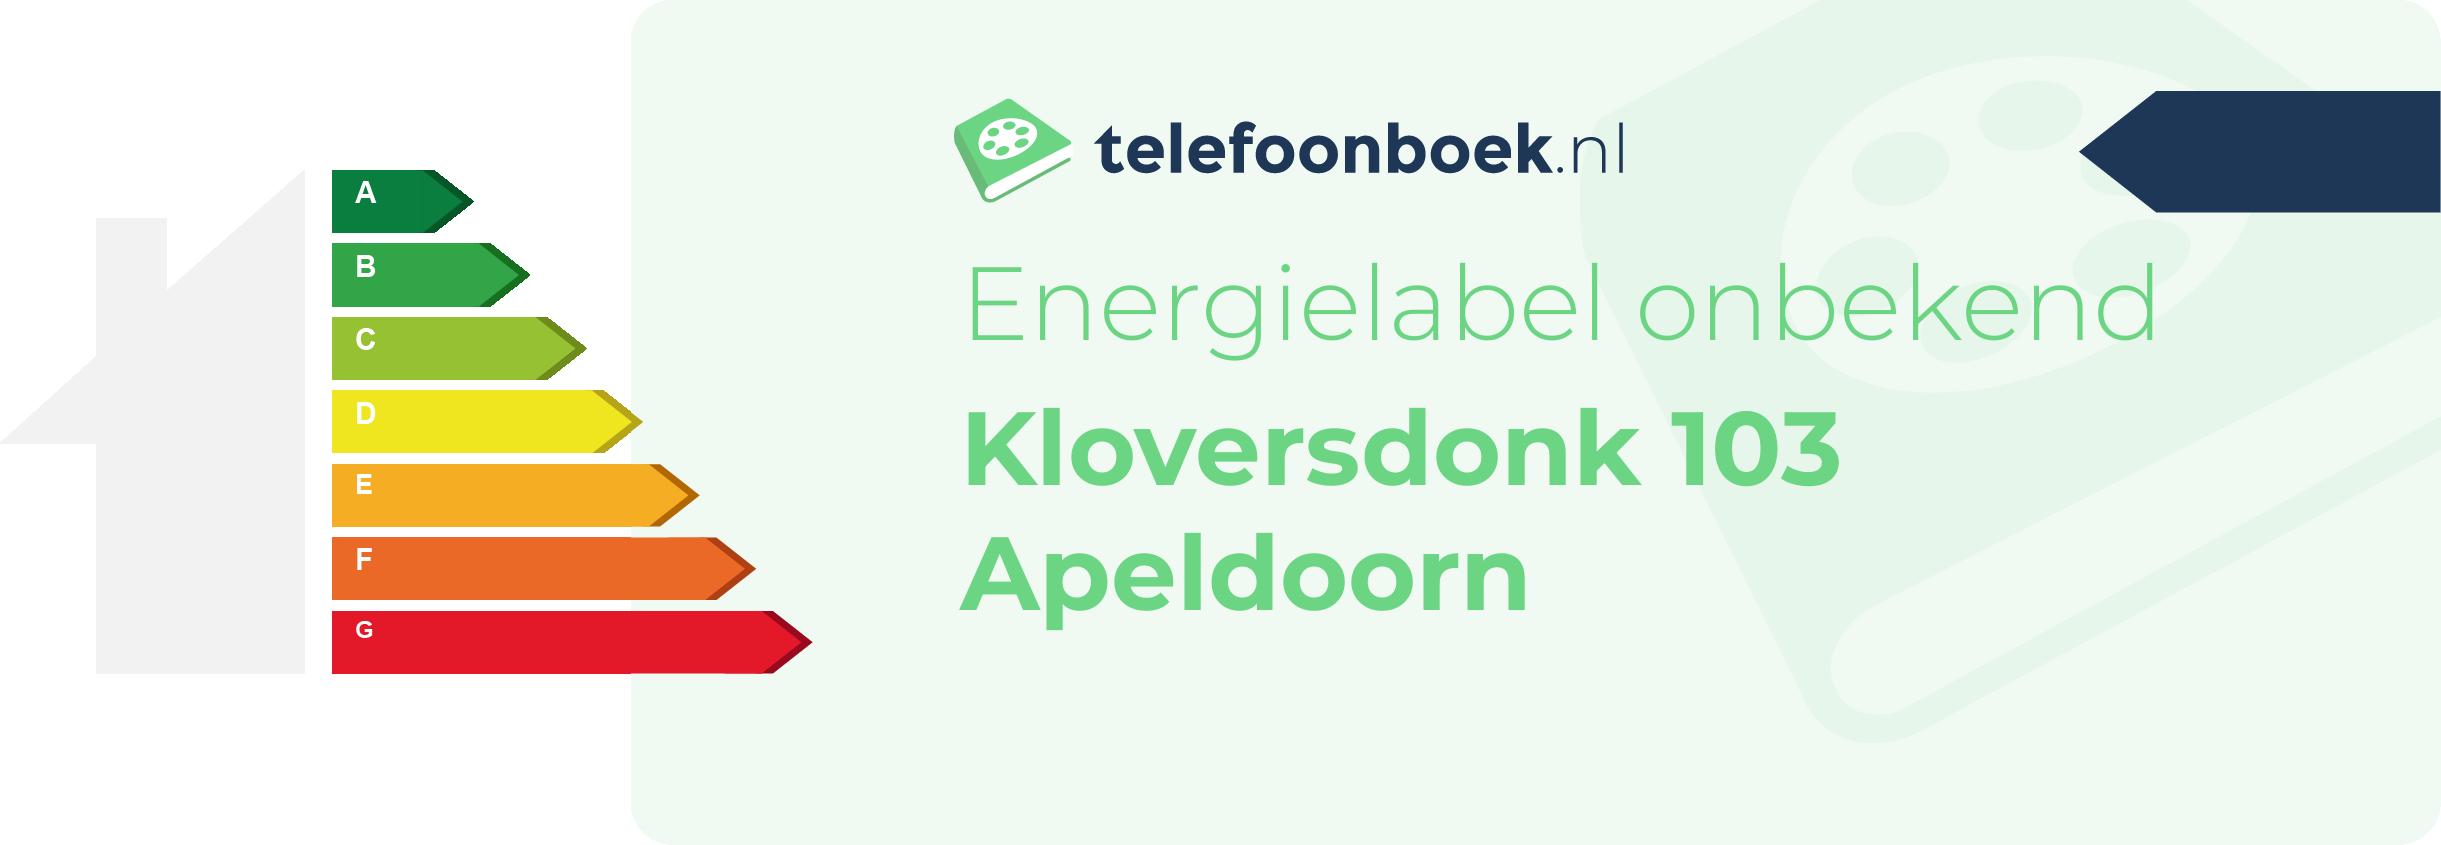 Energielabel Kloversdonk 103 Apeldoorn